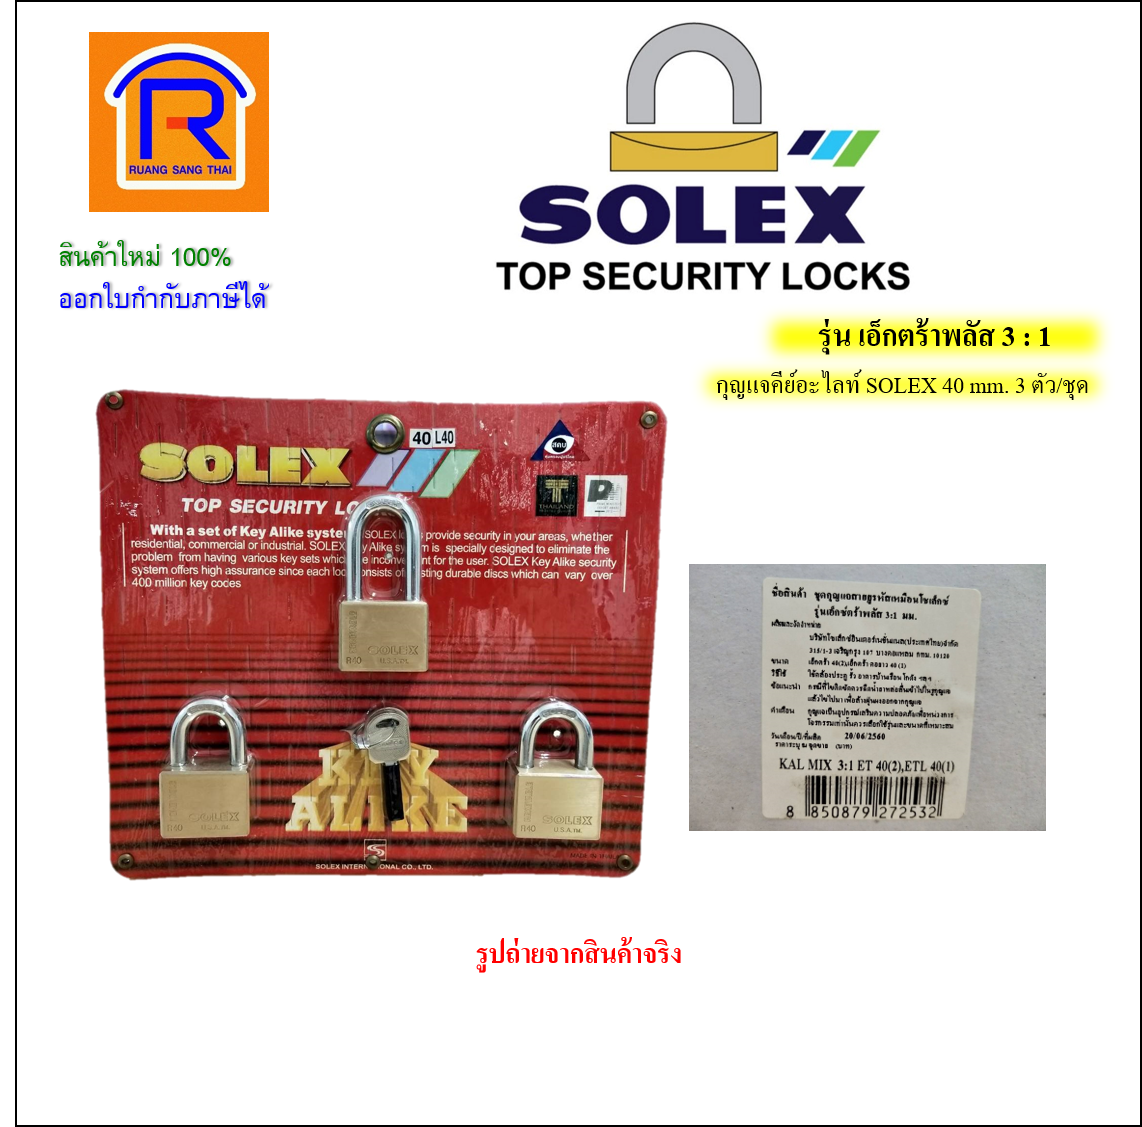 SOLEX เอ็กซ์ตร้าพลัส 3 : 1 solex 40 มม.